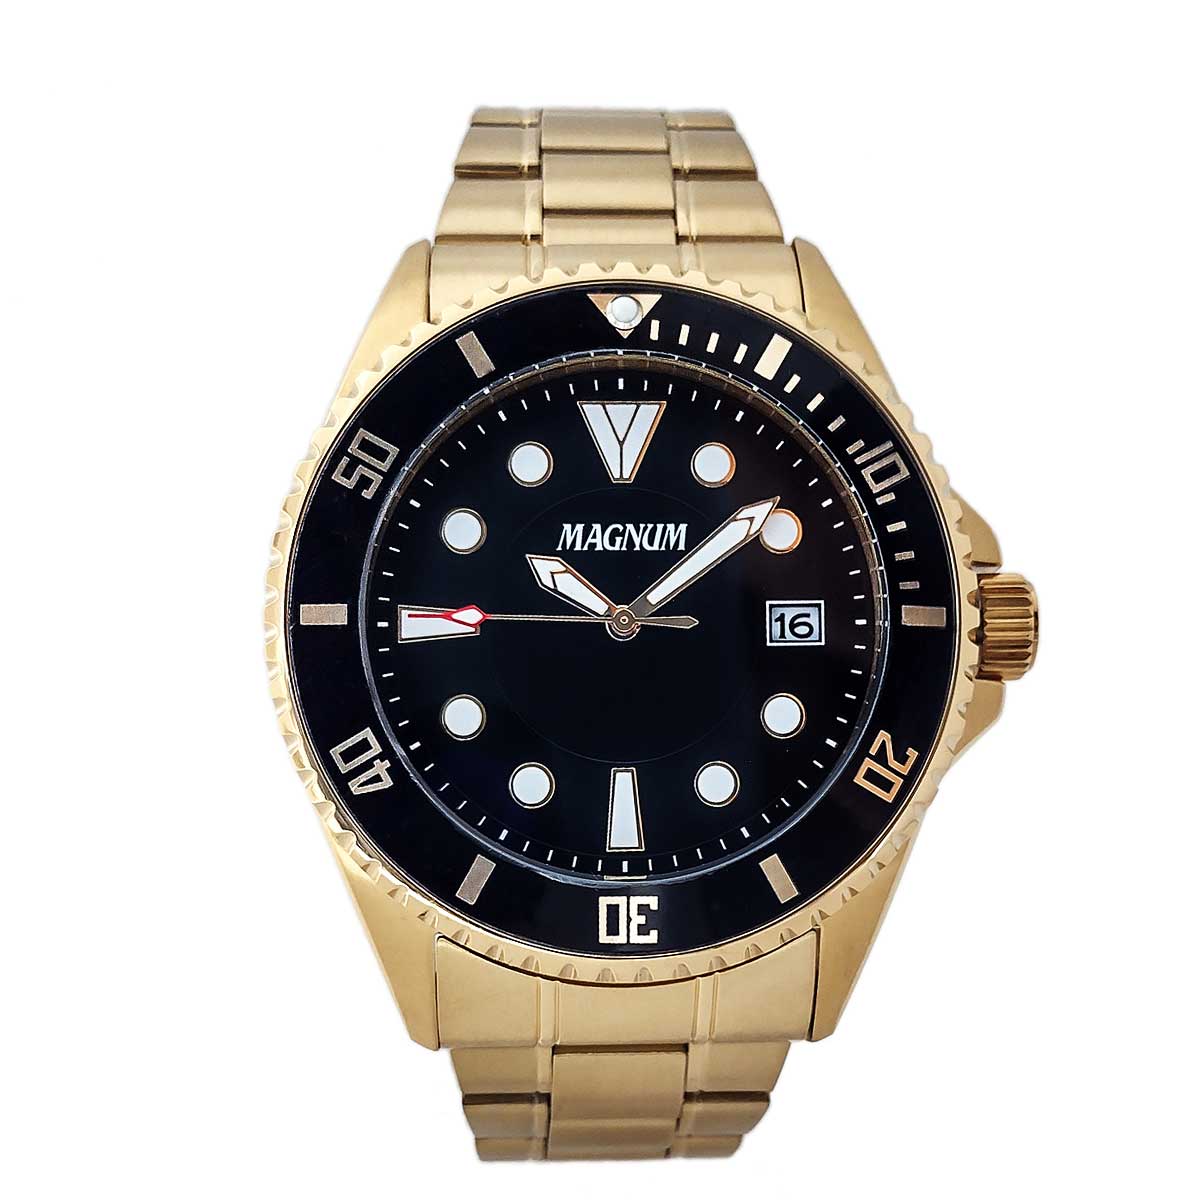 Relógio Magnum Masculino - Dourado